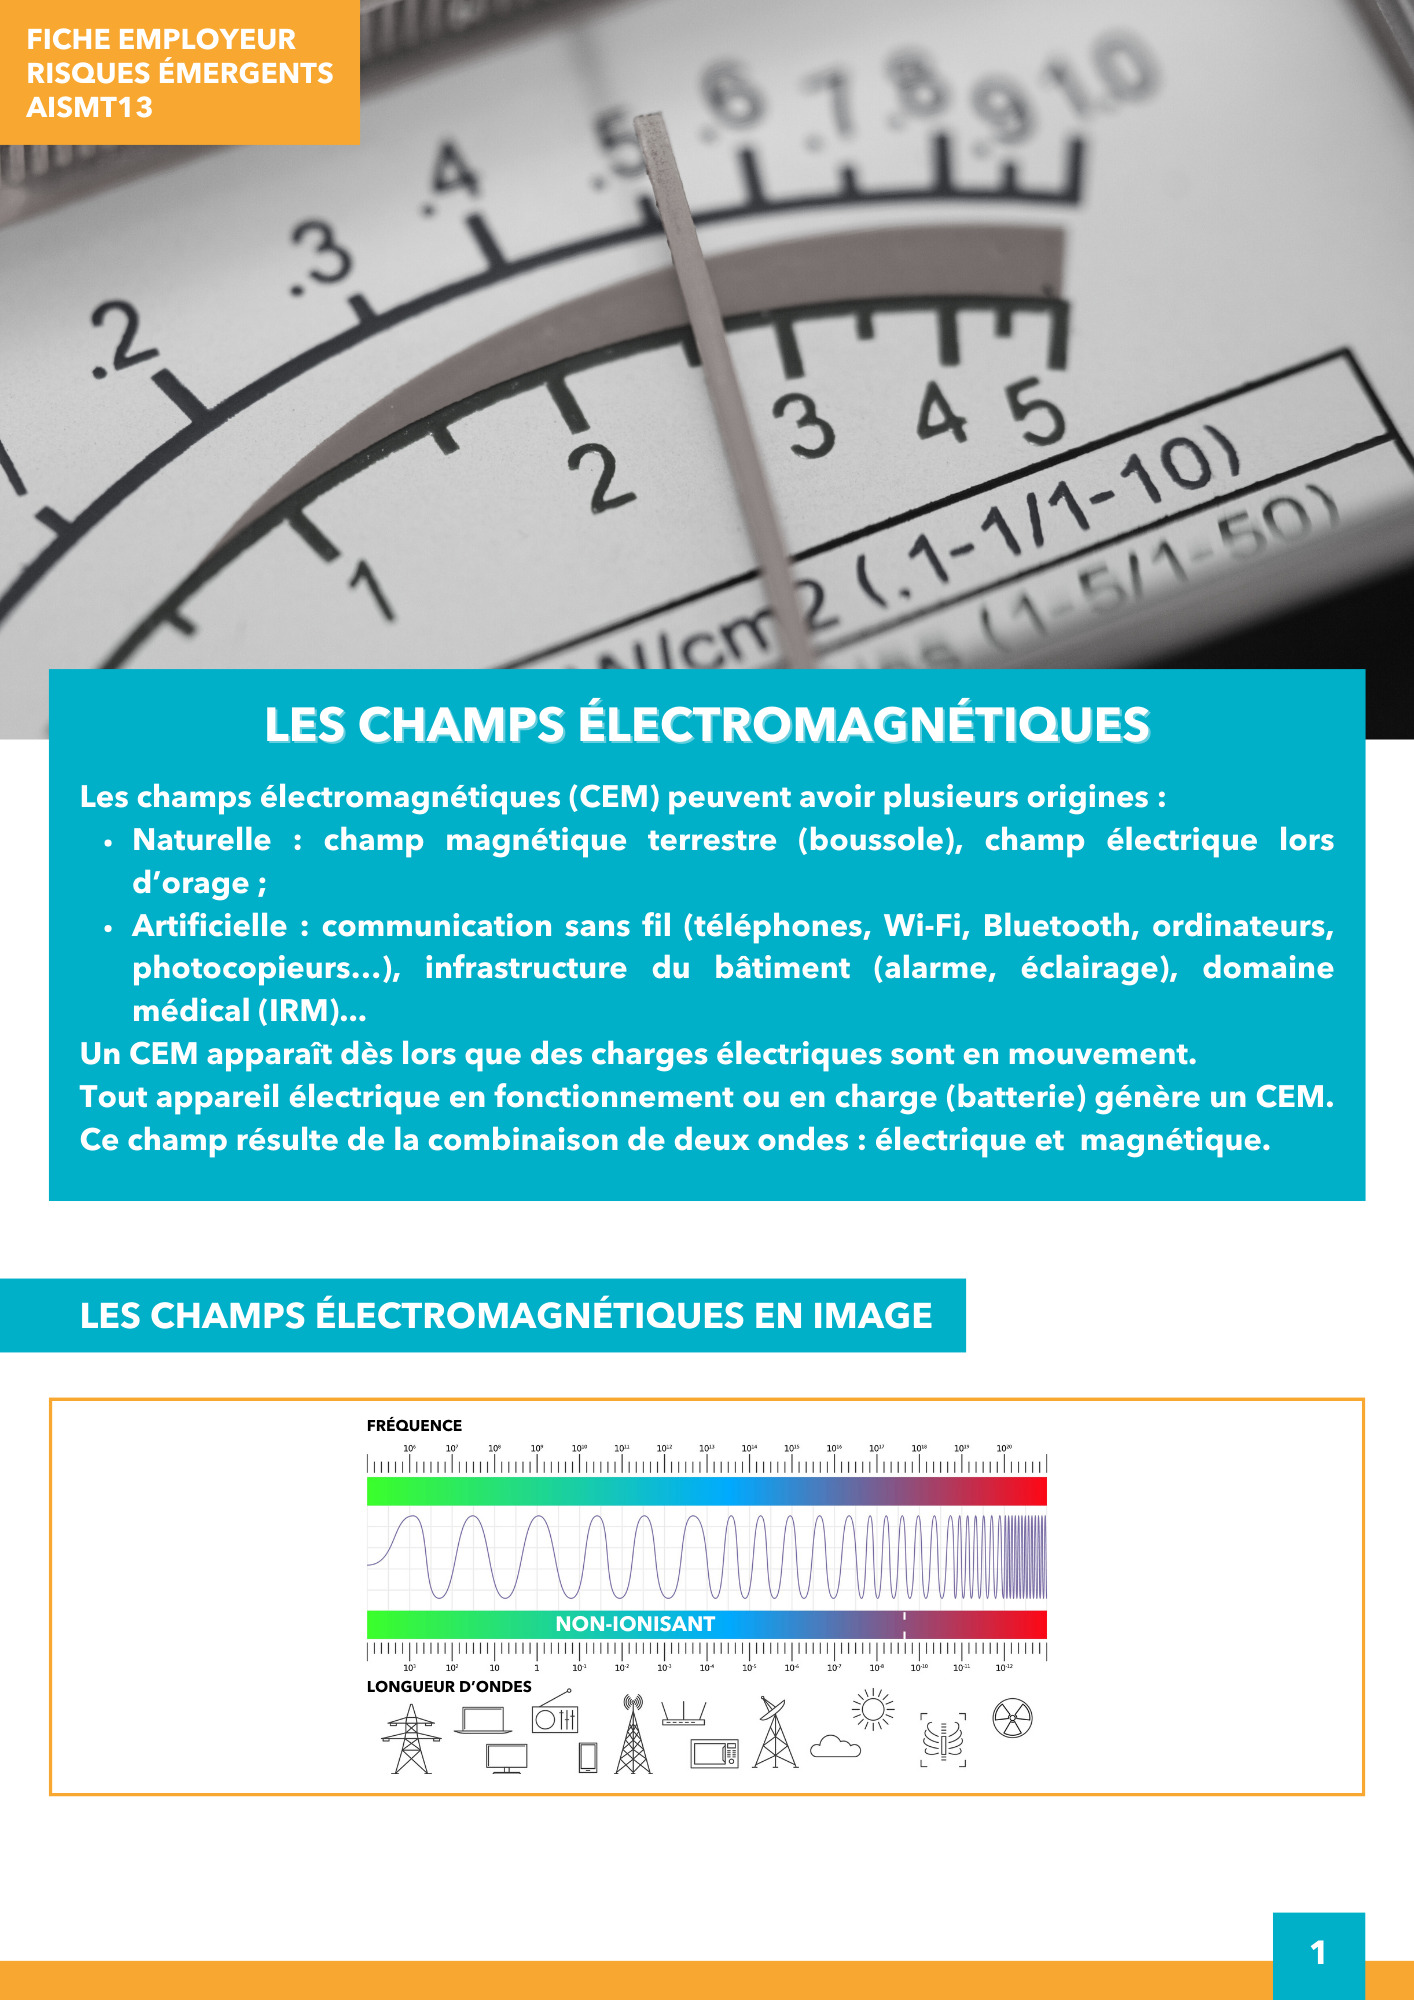 Champs électromagnétiques Fiche employeur Risques émergents AISMT13